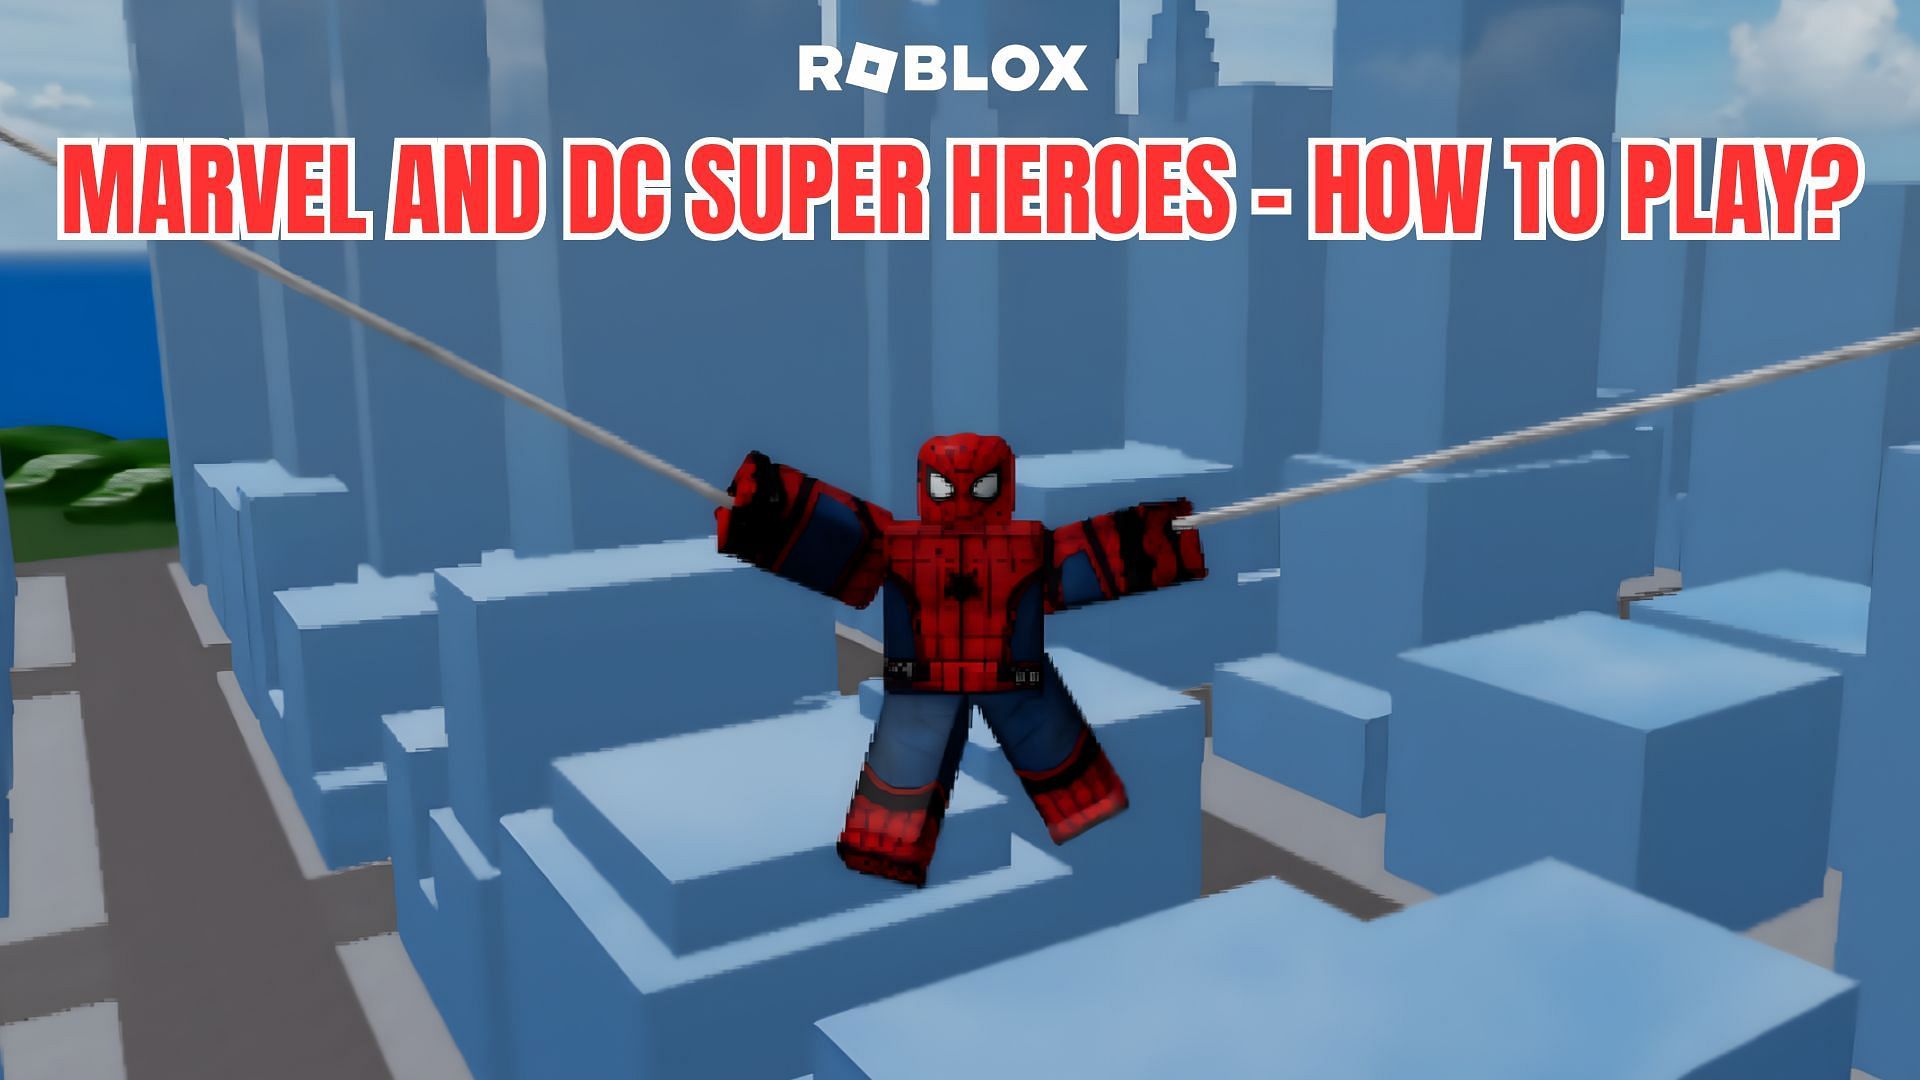 Superhero, Roblox Wiki